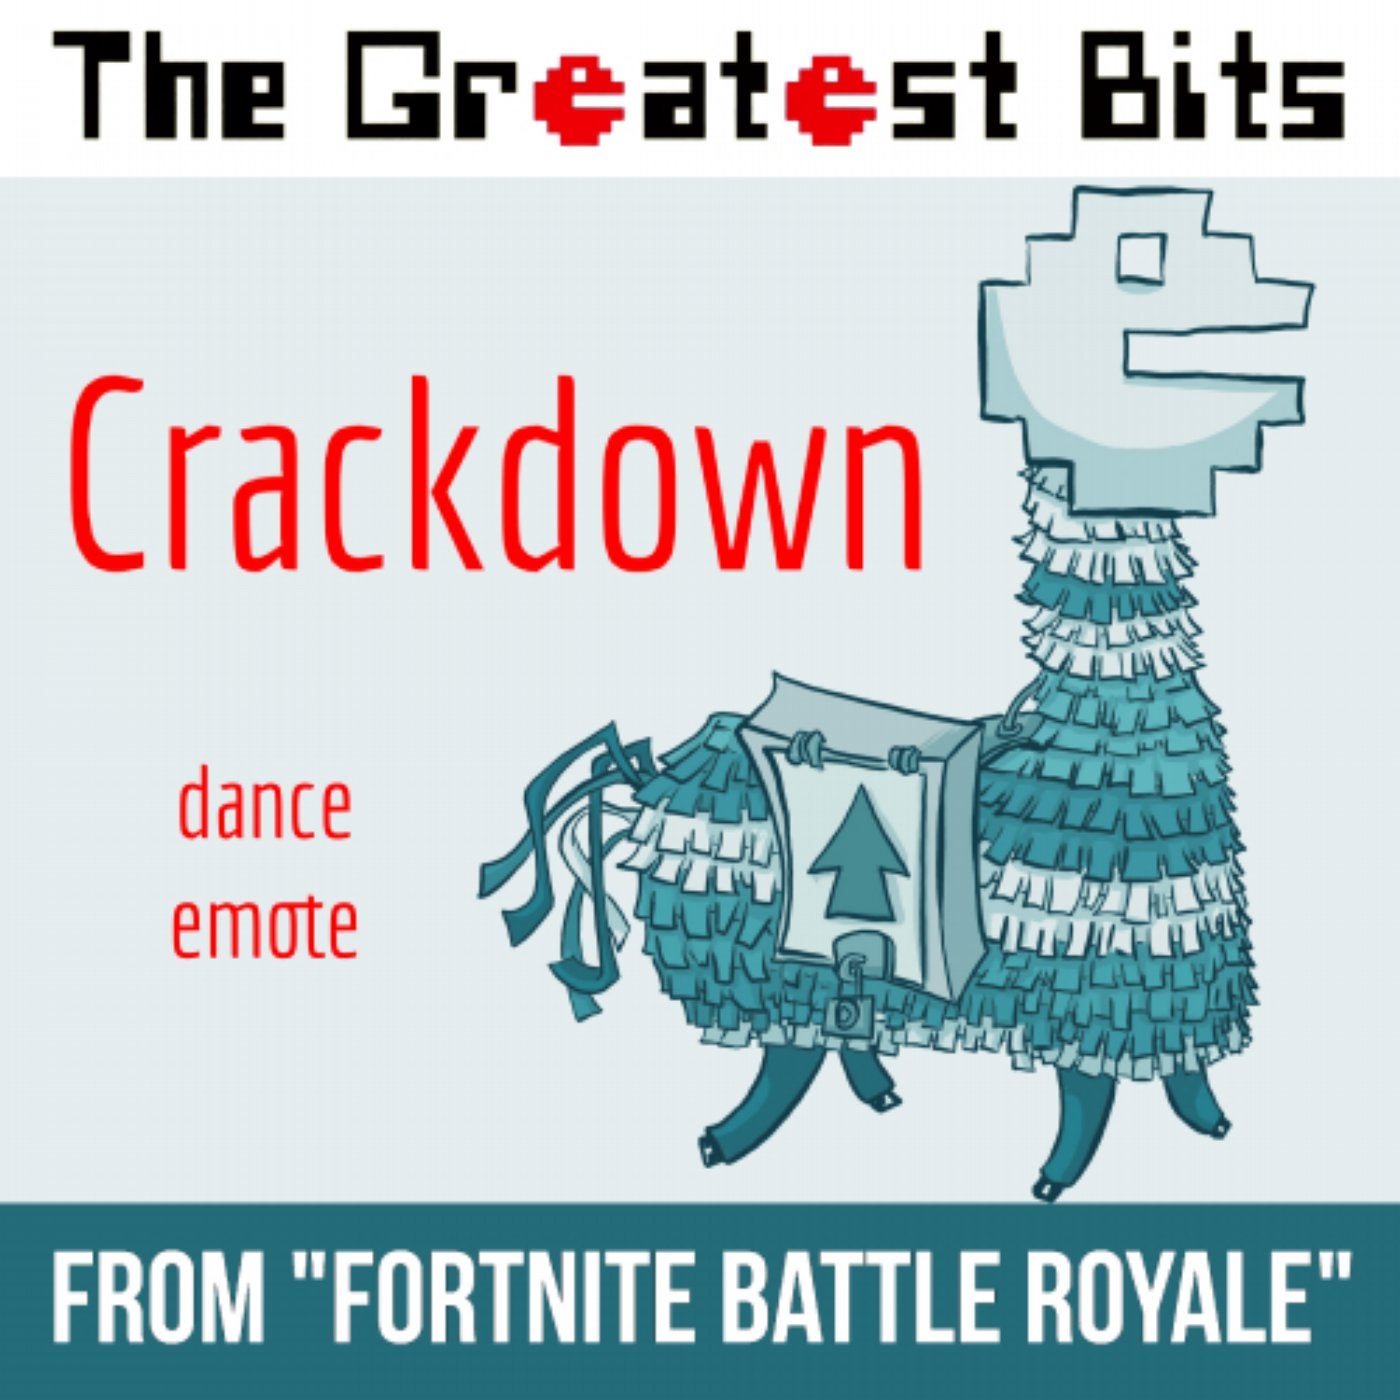 Crackdown Dance Emote (from "Fortnite Battle Royale")